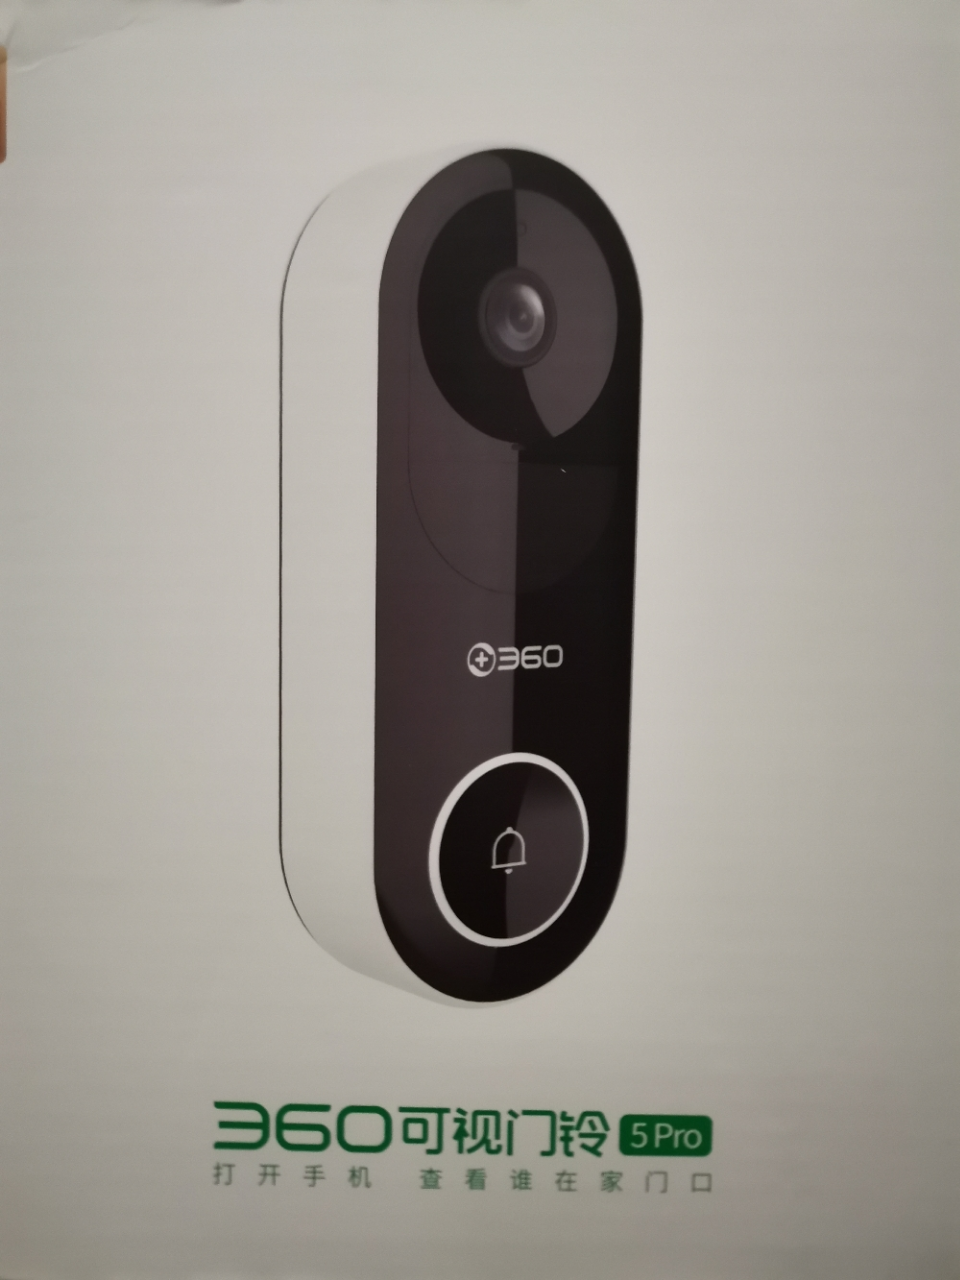 360 可视门铃5 Pro摄像头家用监控摄像头智能摄像机 2K智能门铃电子猫眼300W超清夜视+64G内存卡+读卡器晒单图